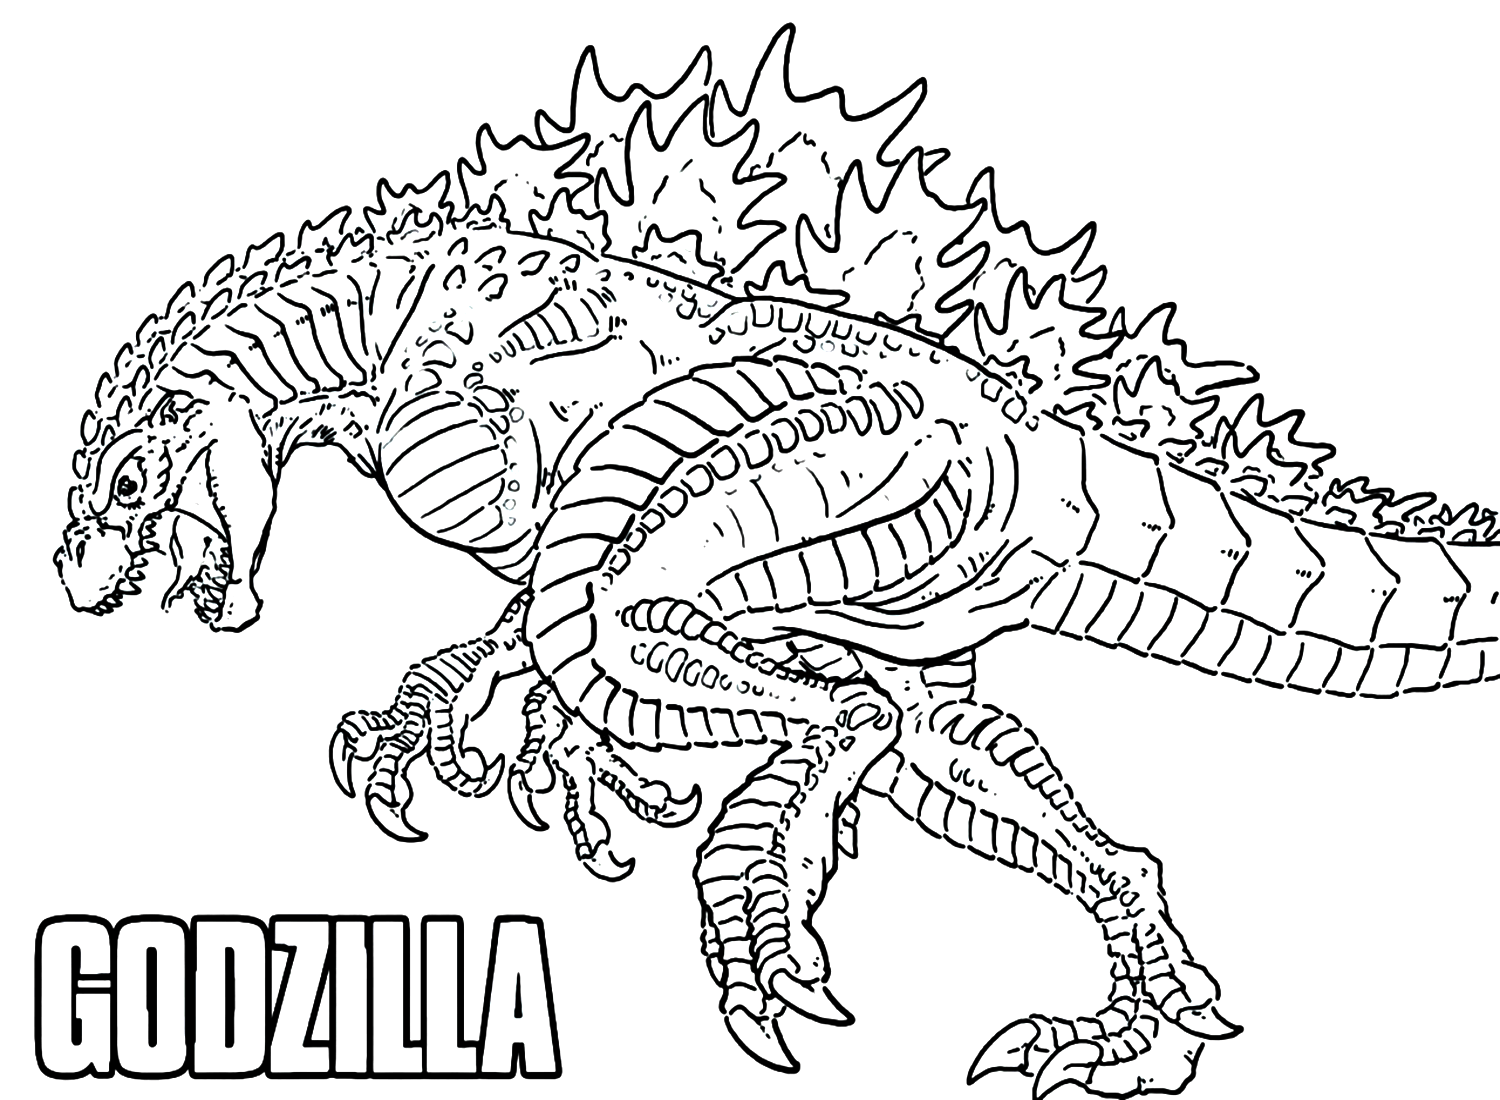 Grande Godzilla da Godzilla